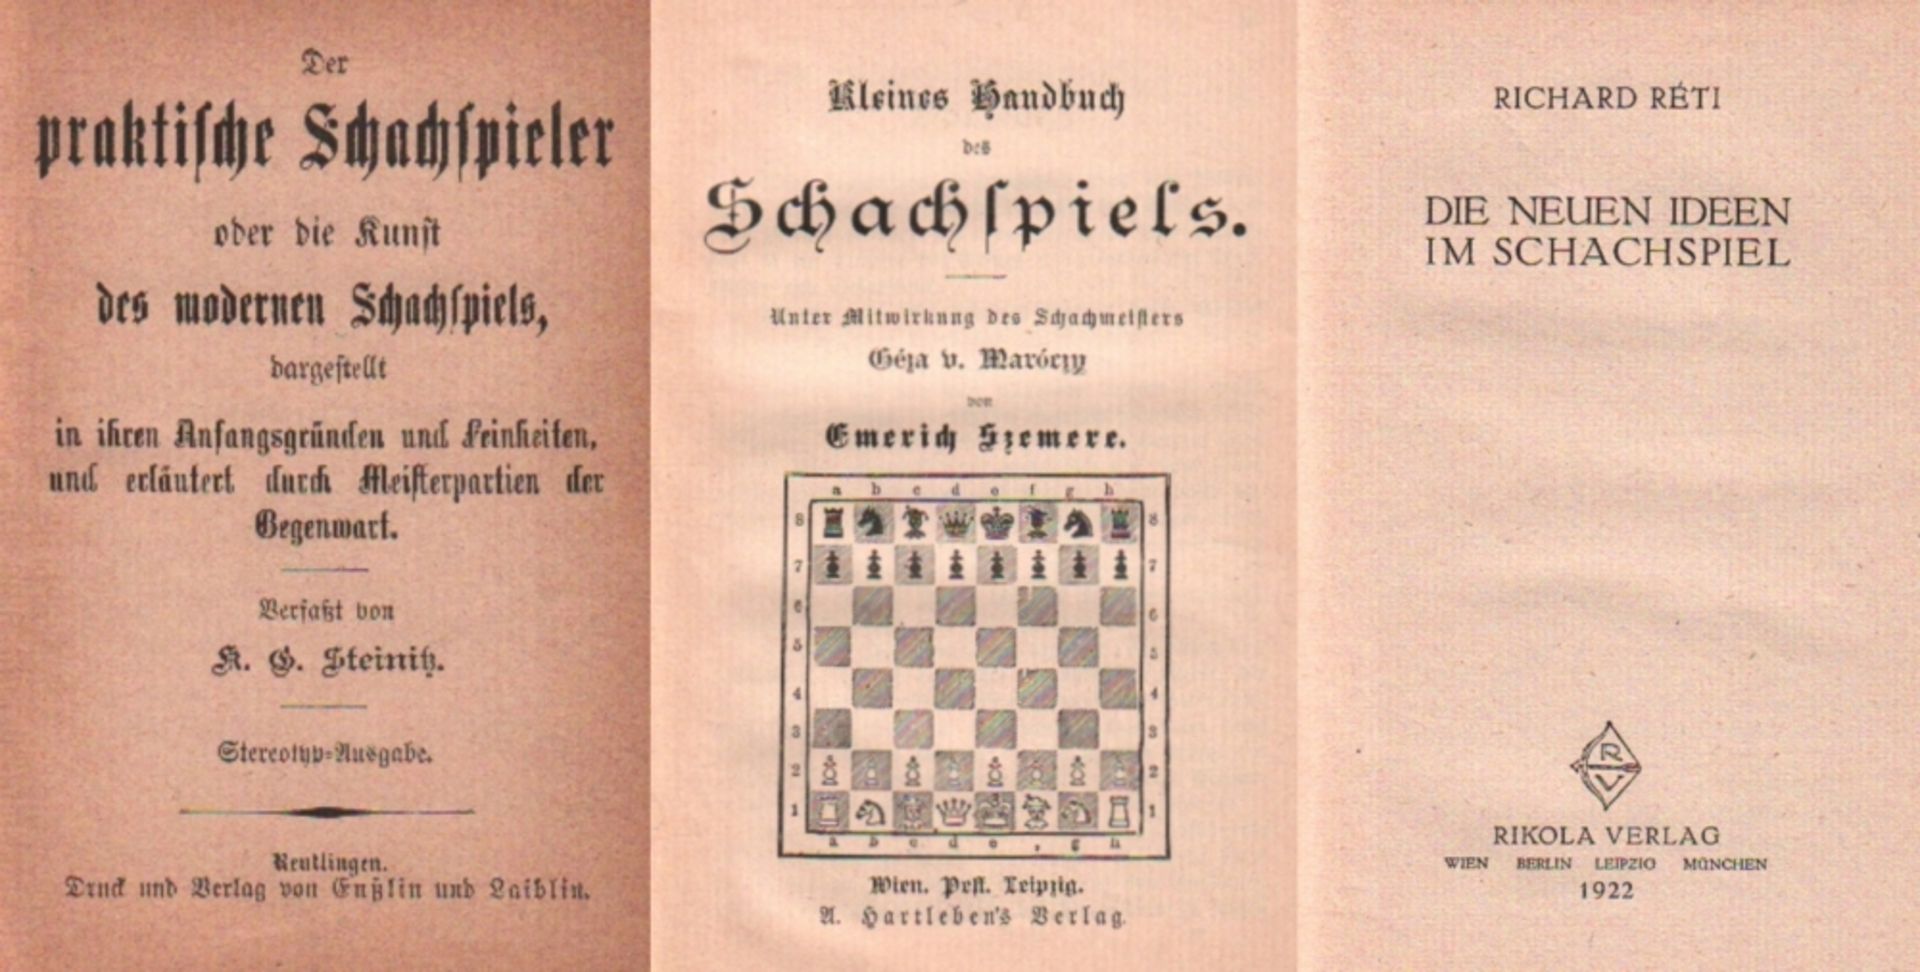 Steinitz, K. G. Der praktische Schachspieler oder die Kunst des modernen Schachspiels ... und